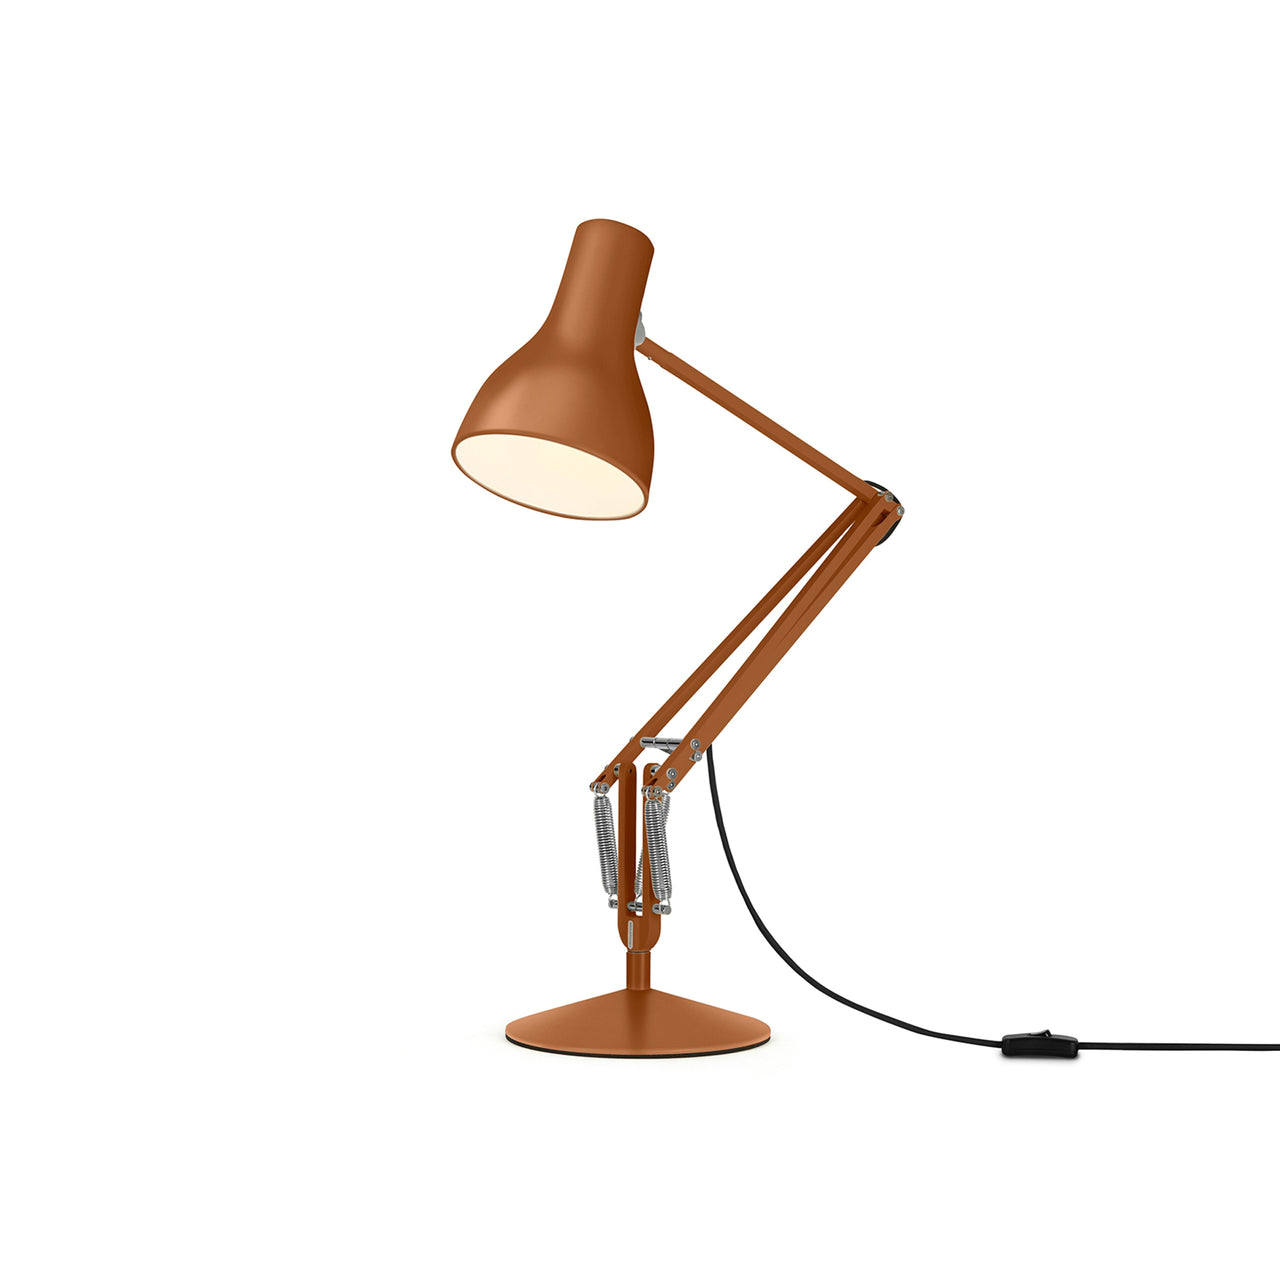 Type 75 Desk Lamp: Margaret Howell Edition + Sienna